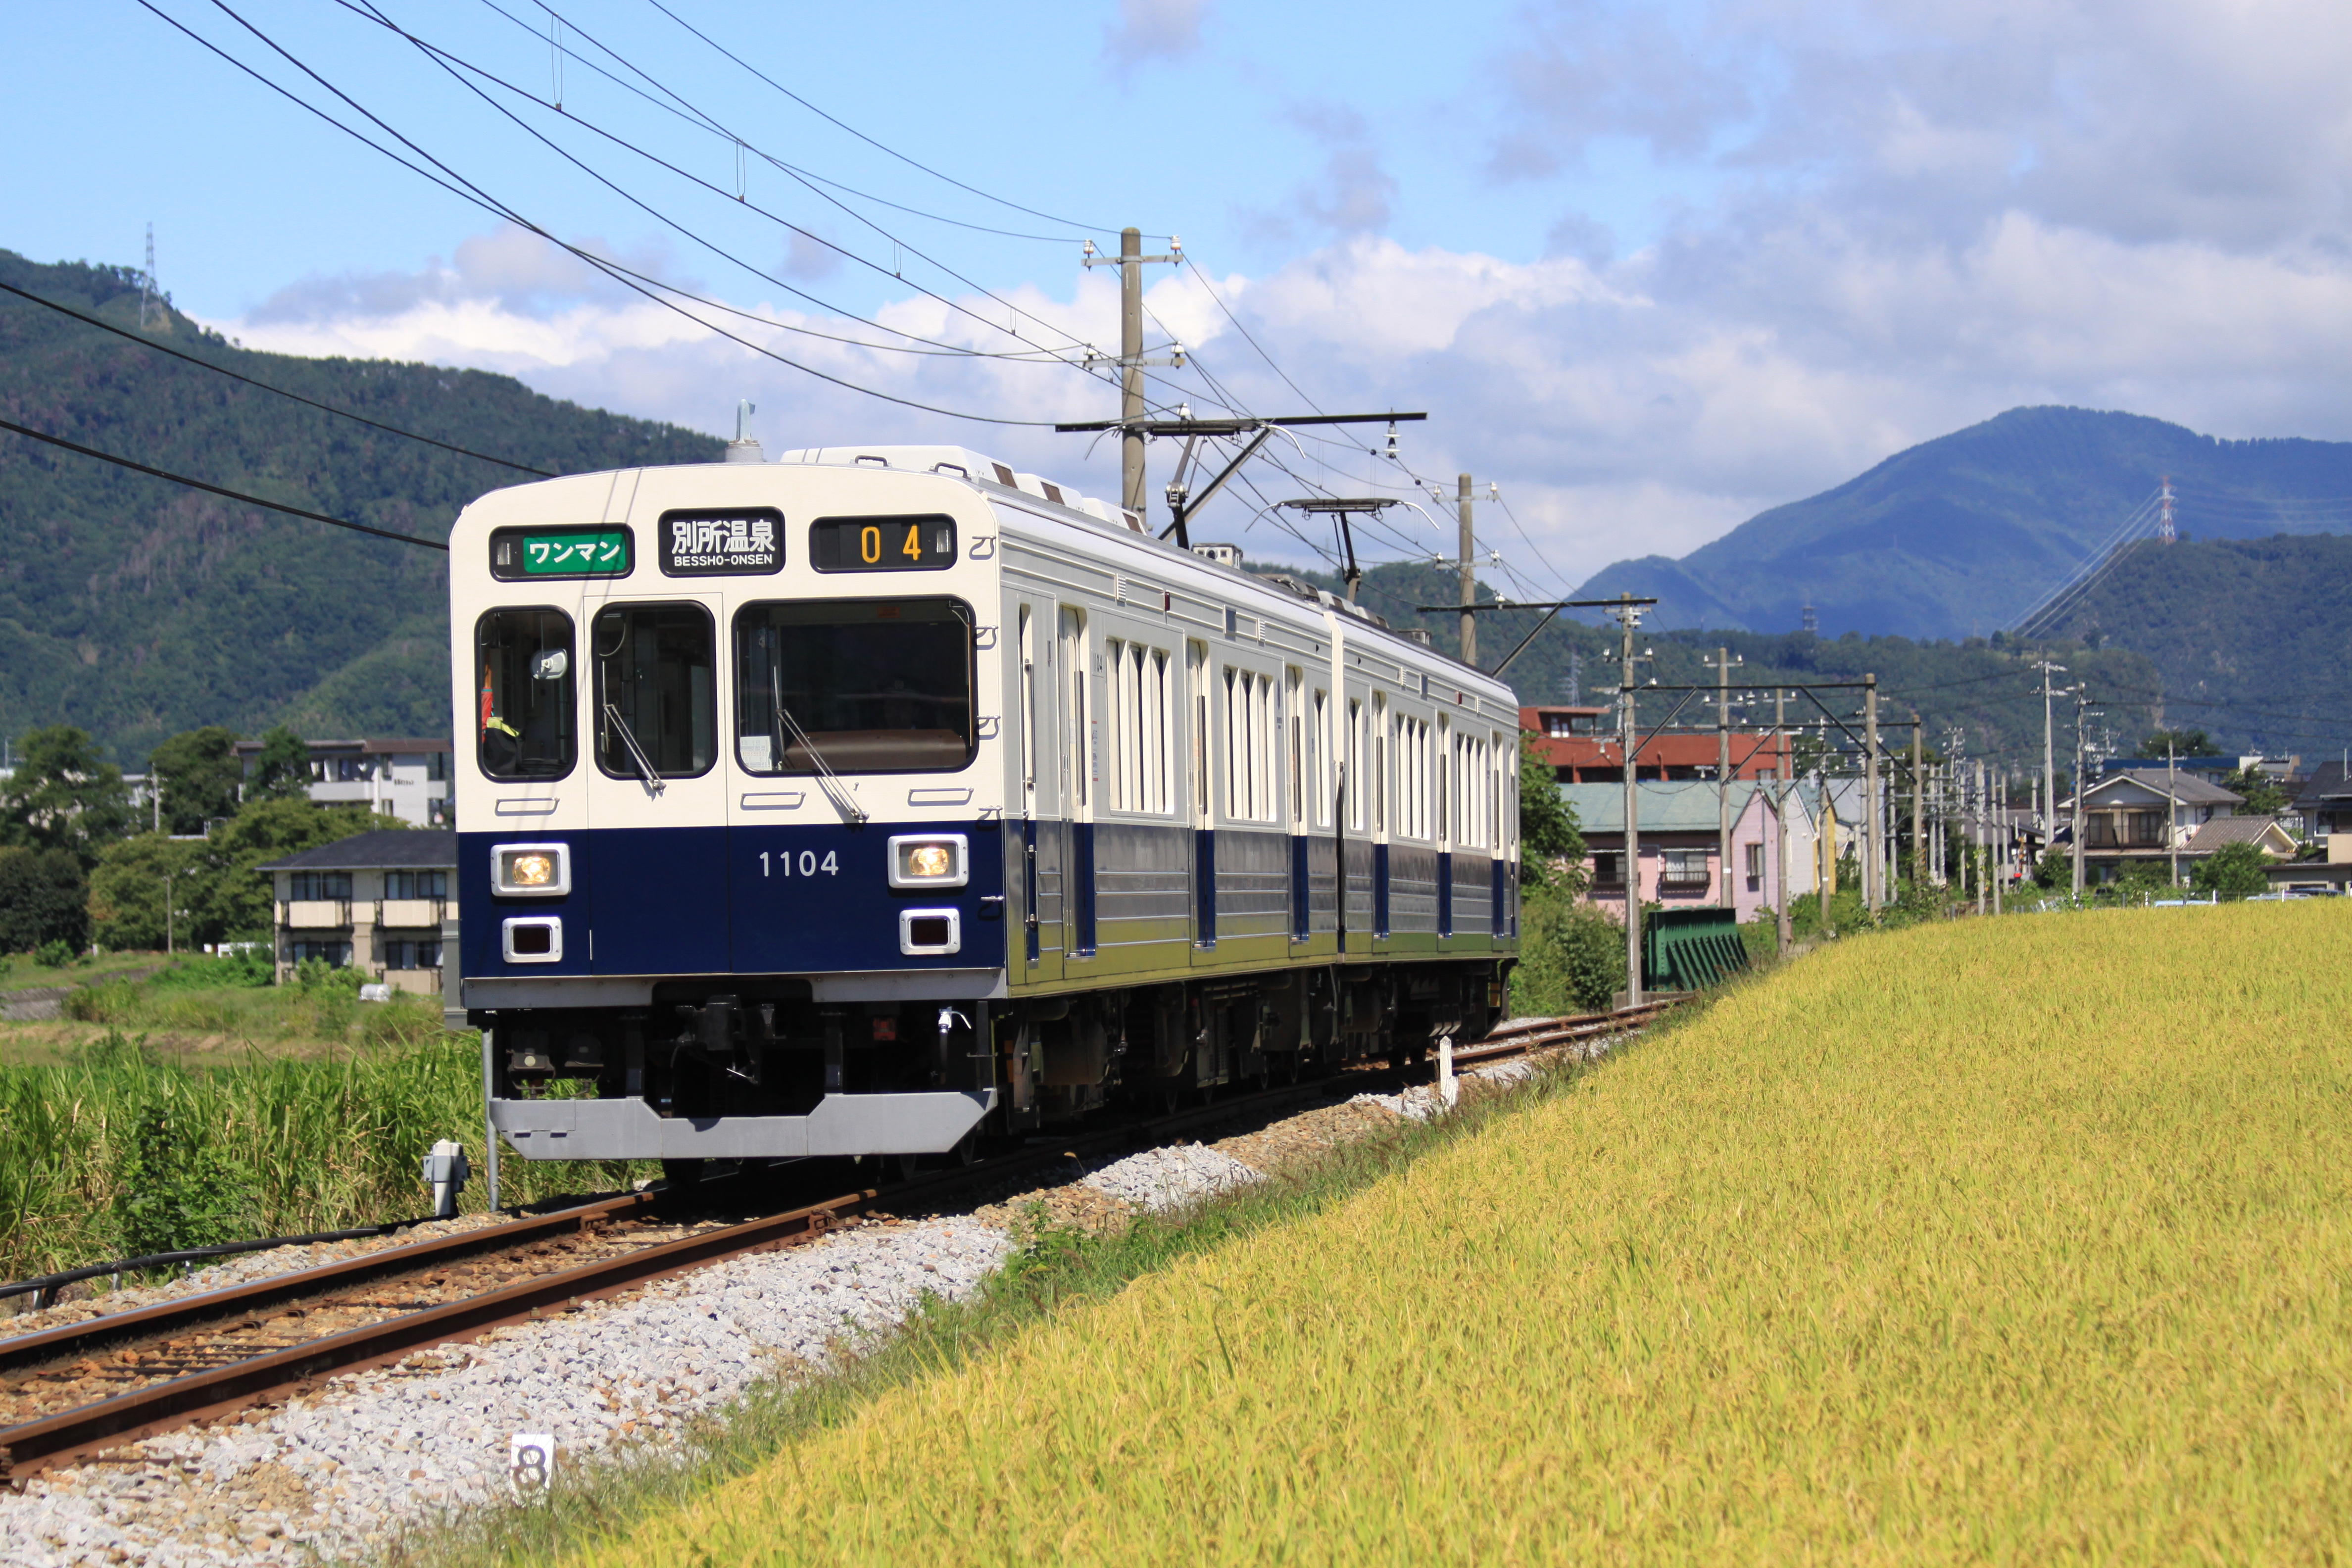 東京都市大学・上田電鉄・長野県青木村が鉄道開業150周年を機に電車を用いた観光と地元支援の実証実験を実施